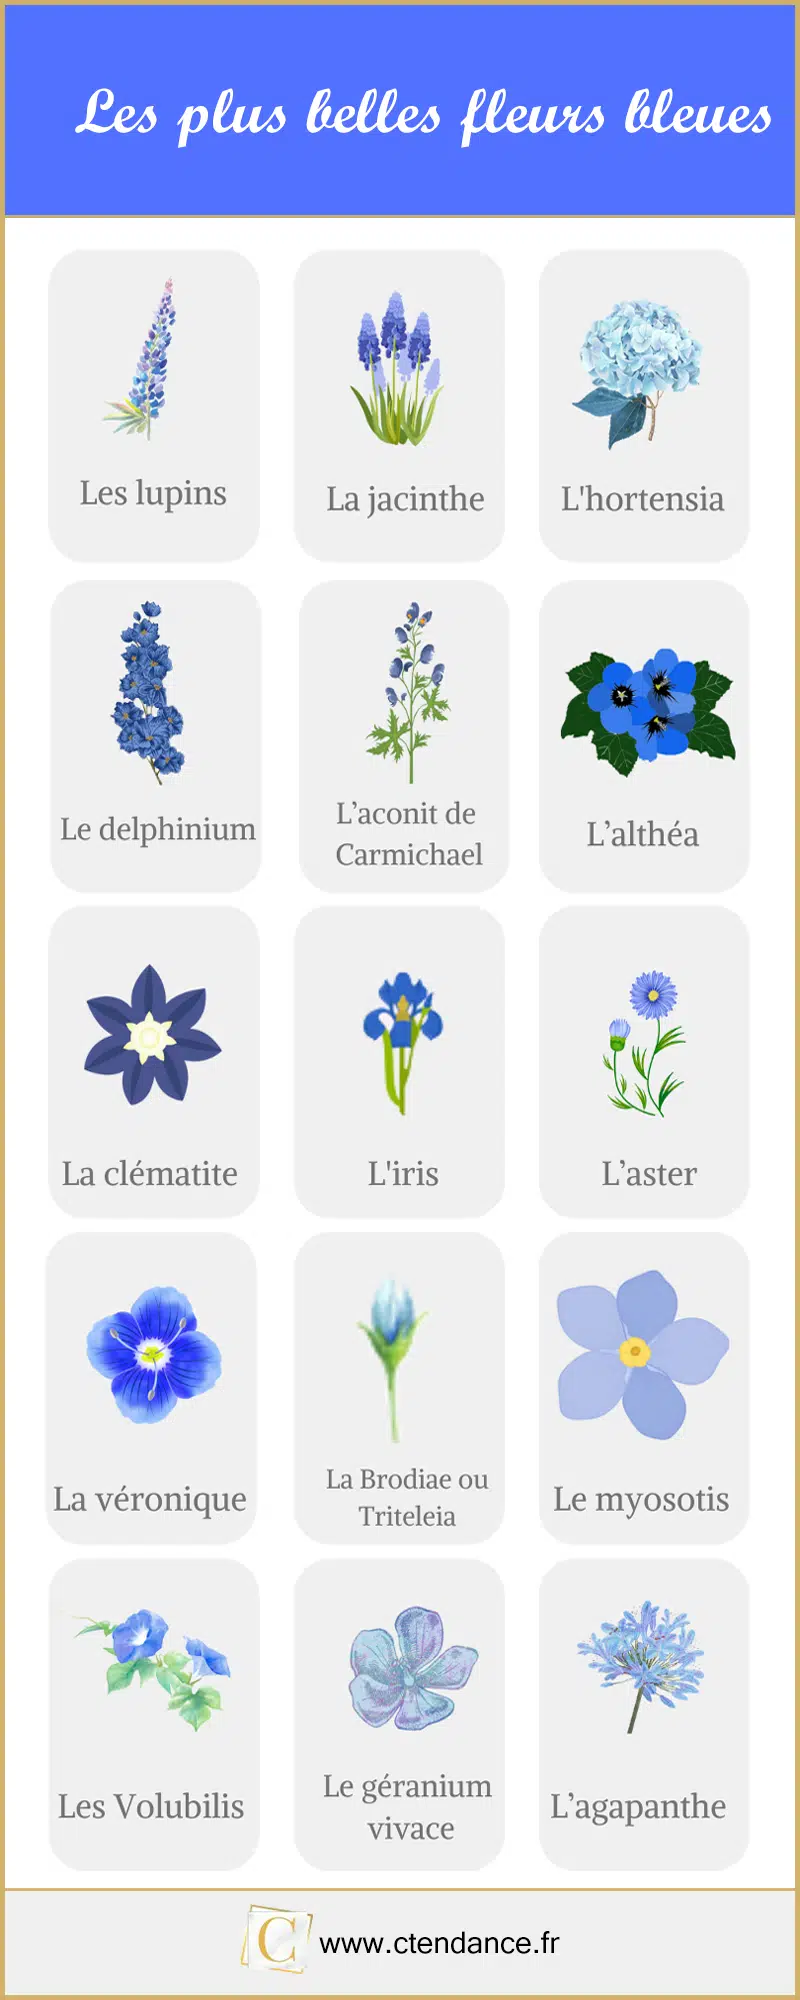 De mooiste blauwe bloemen in beeld